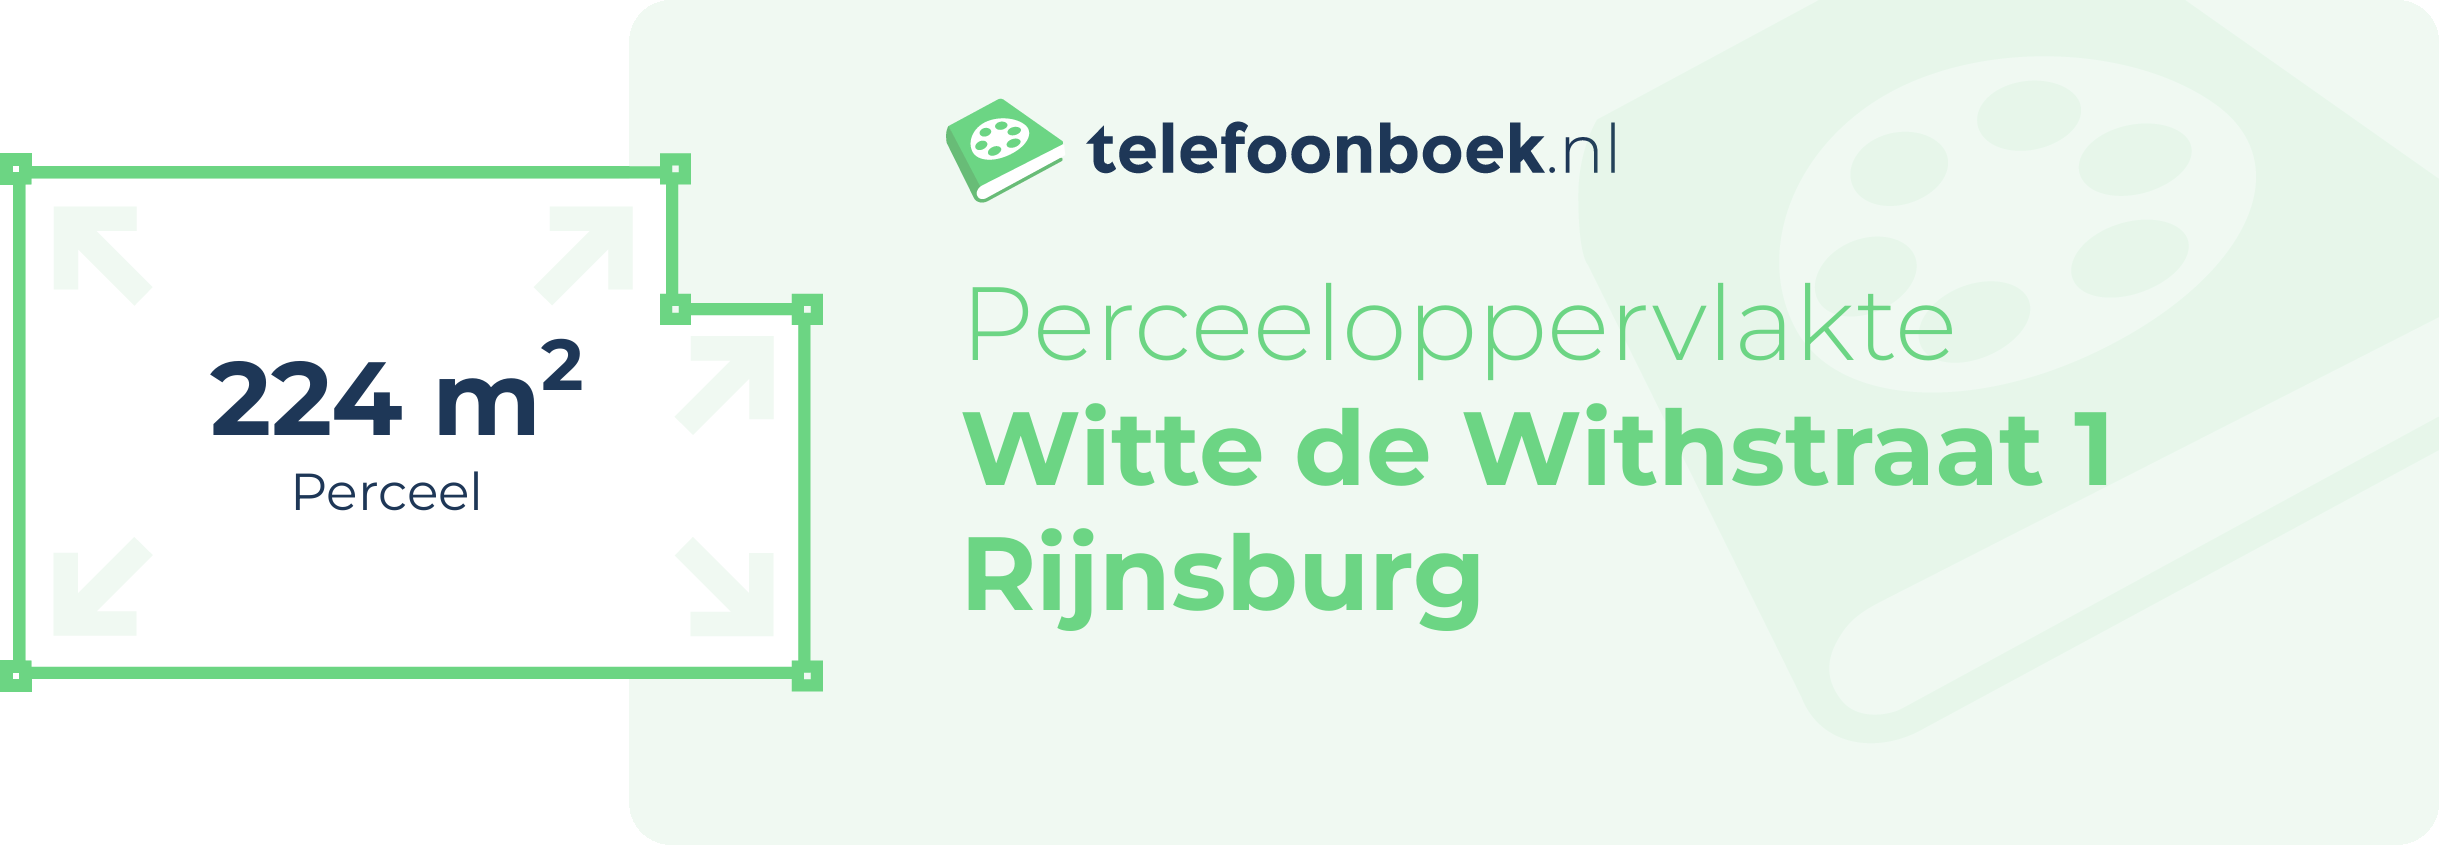 Perceeloppervlakte Witte De Withstraat 1 Rijnsburg